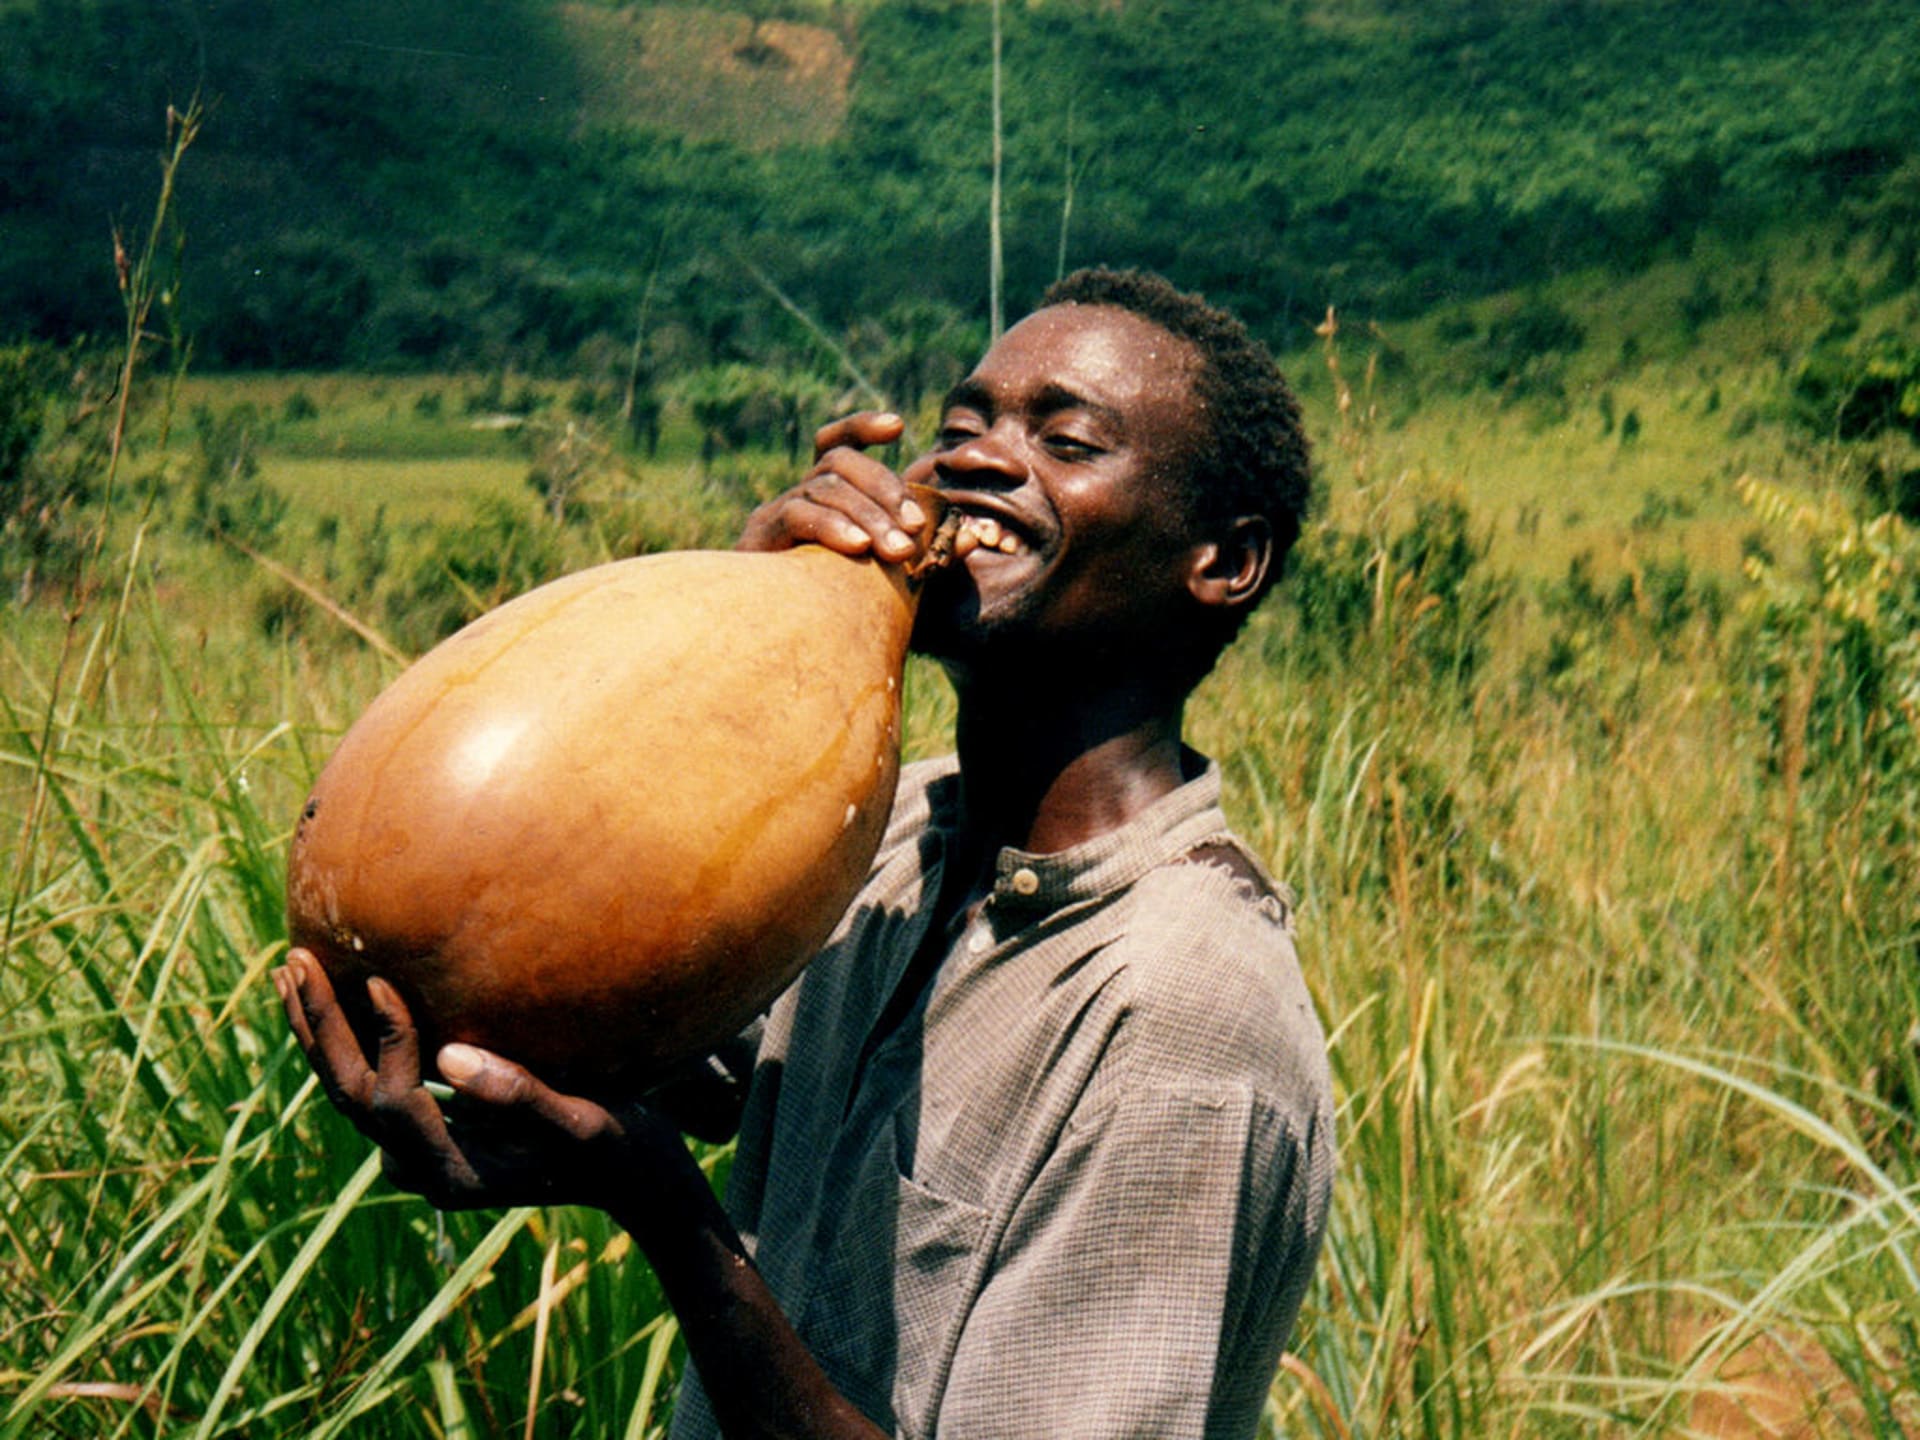 vysmátý mladík z Konga se osvěžuje palmovým vínem